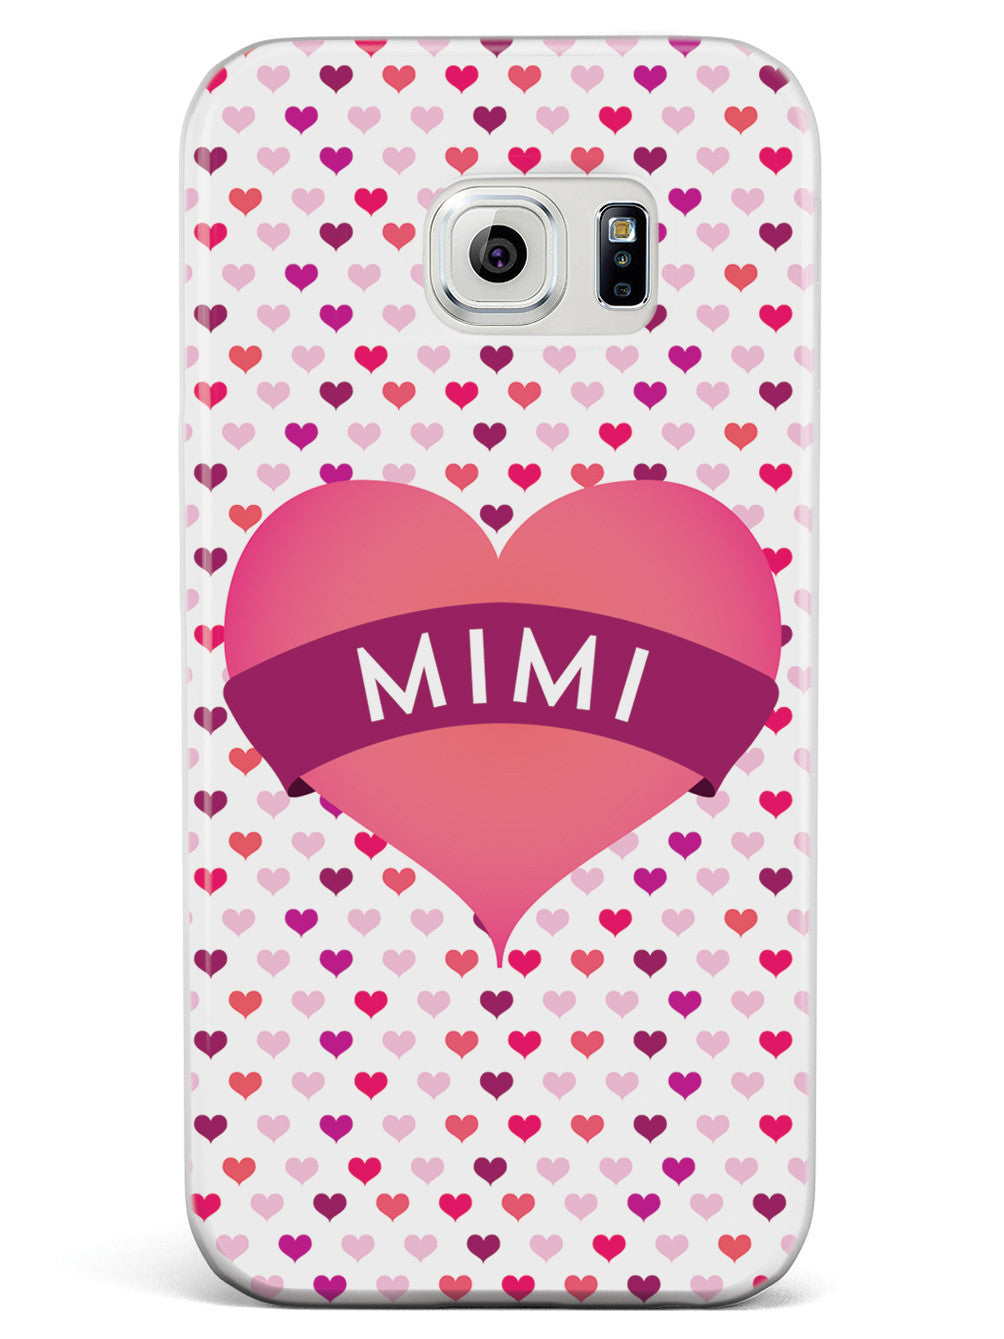 Mimi Heart for Grandma Case